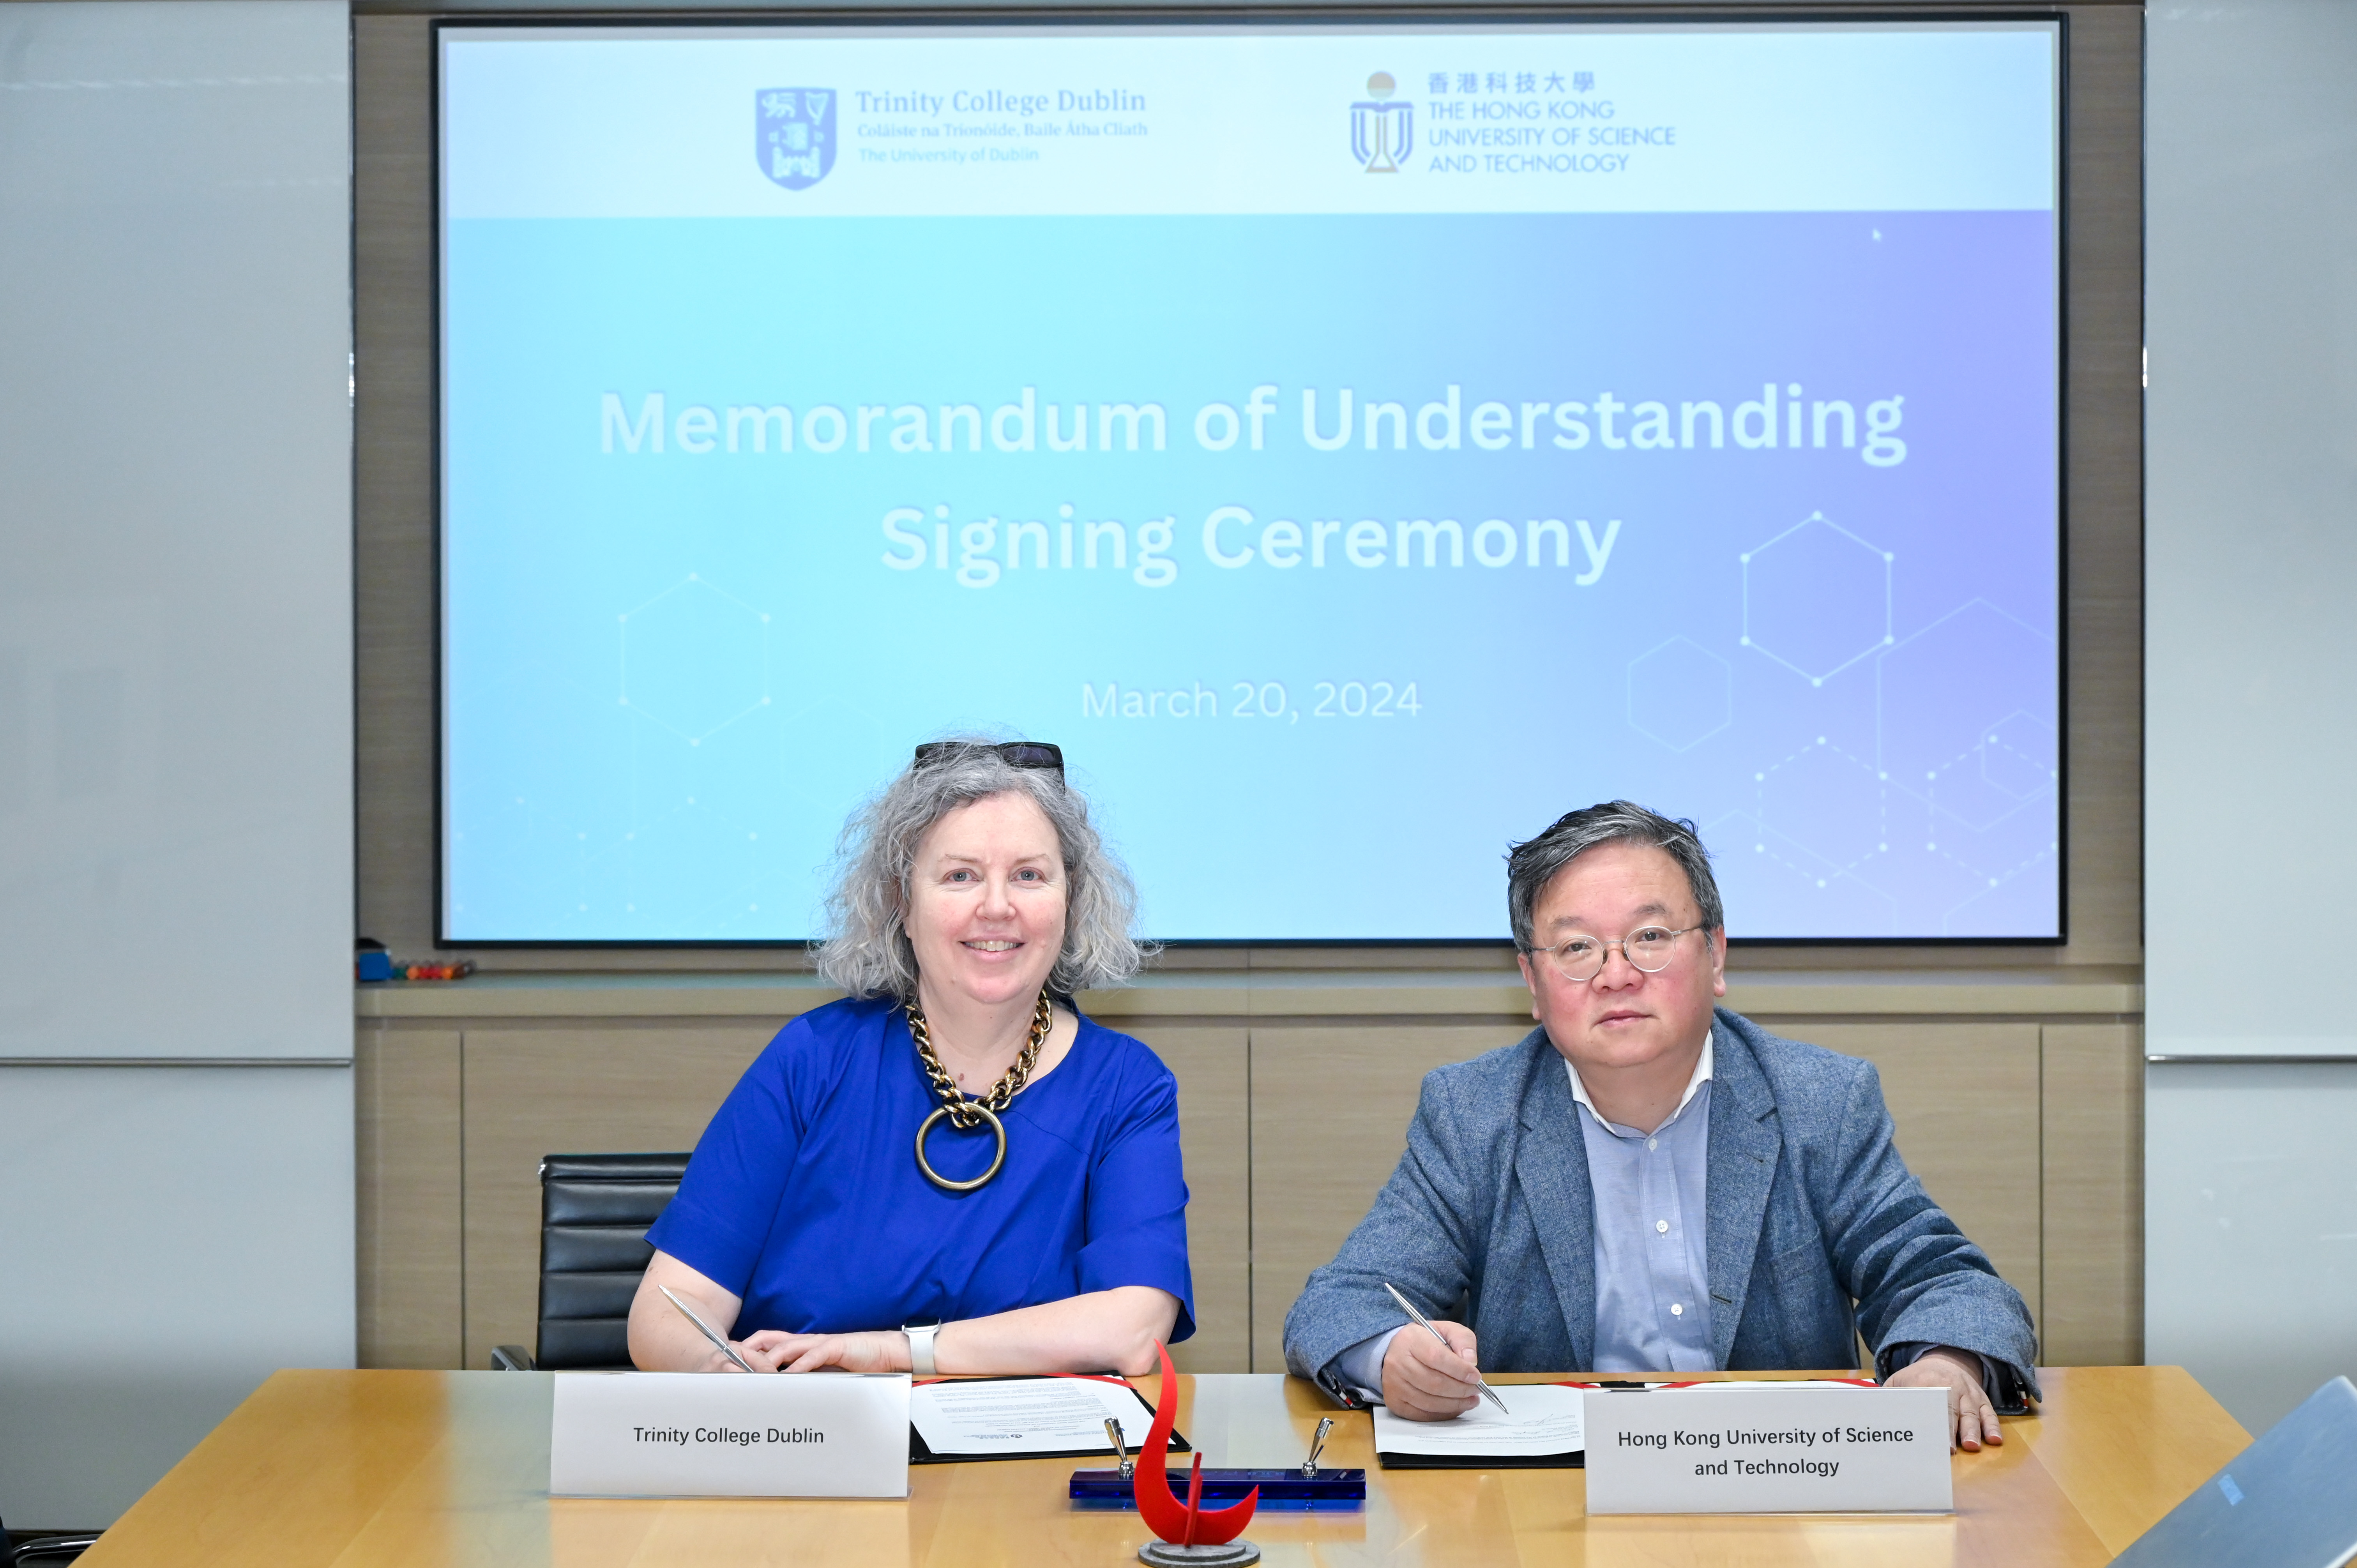 都柏林圣三一学院校长Linda DOYLE教授与科大首席副校长郭毅可教授签署合作备忘录和学生交换协议。